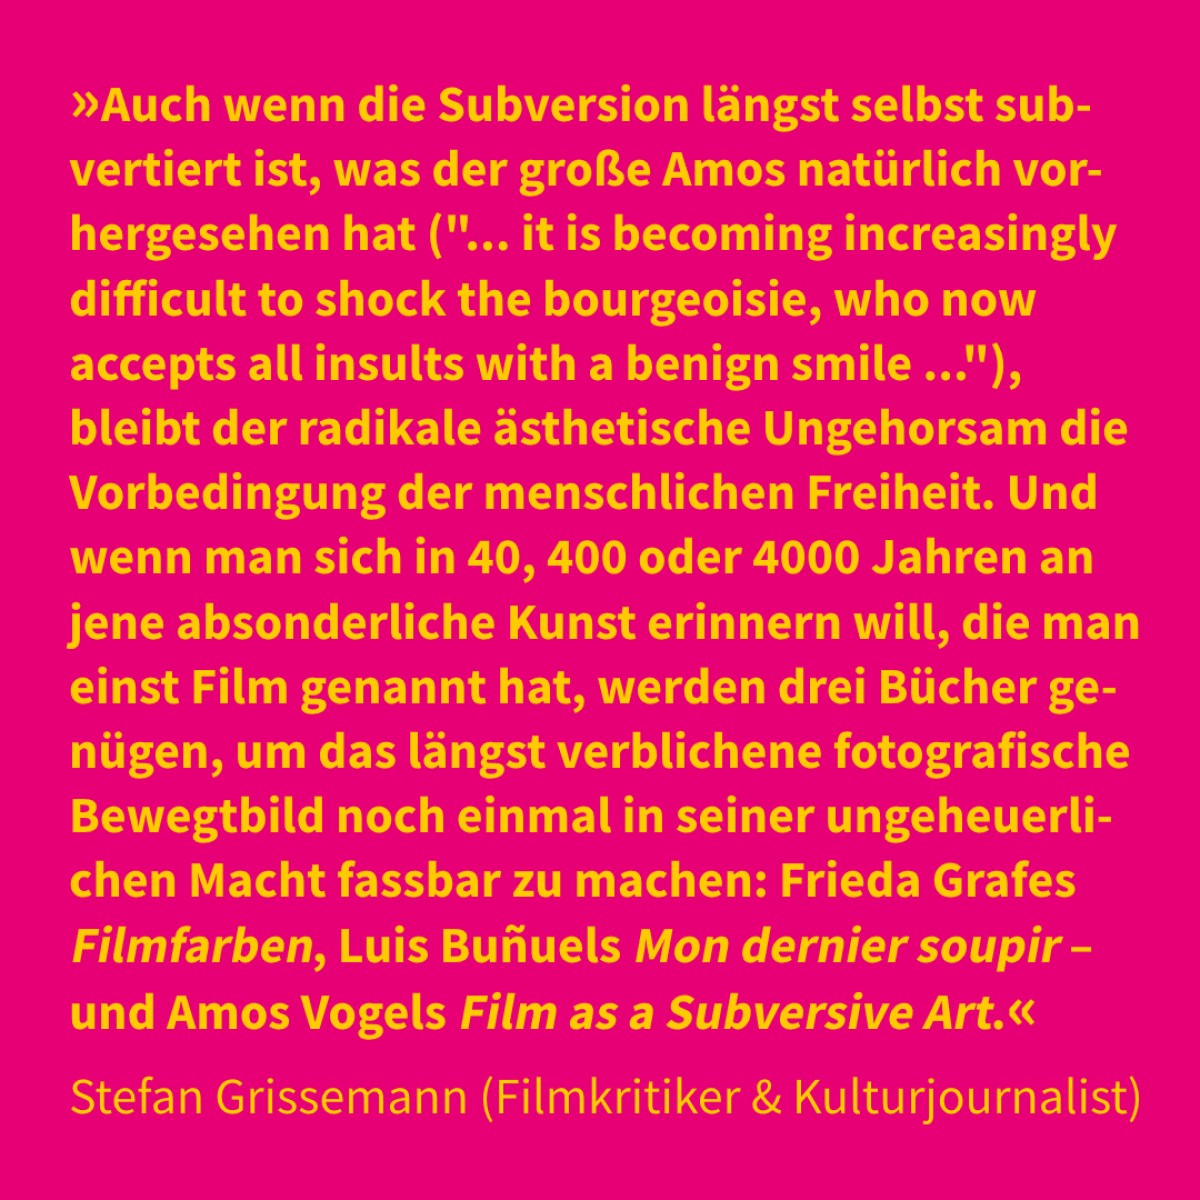 Stefan Grissemann (Filmkritiker & Kulturjournalist)